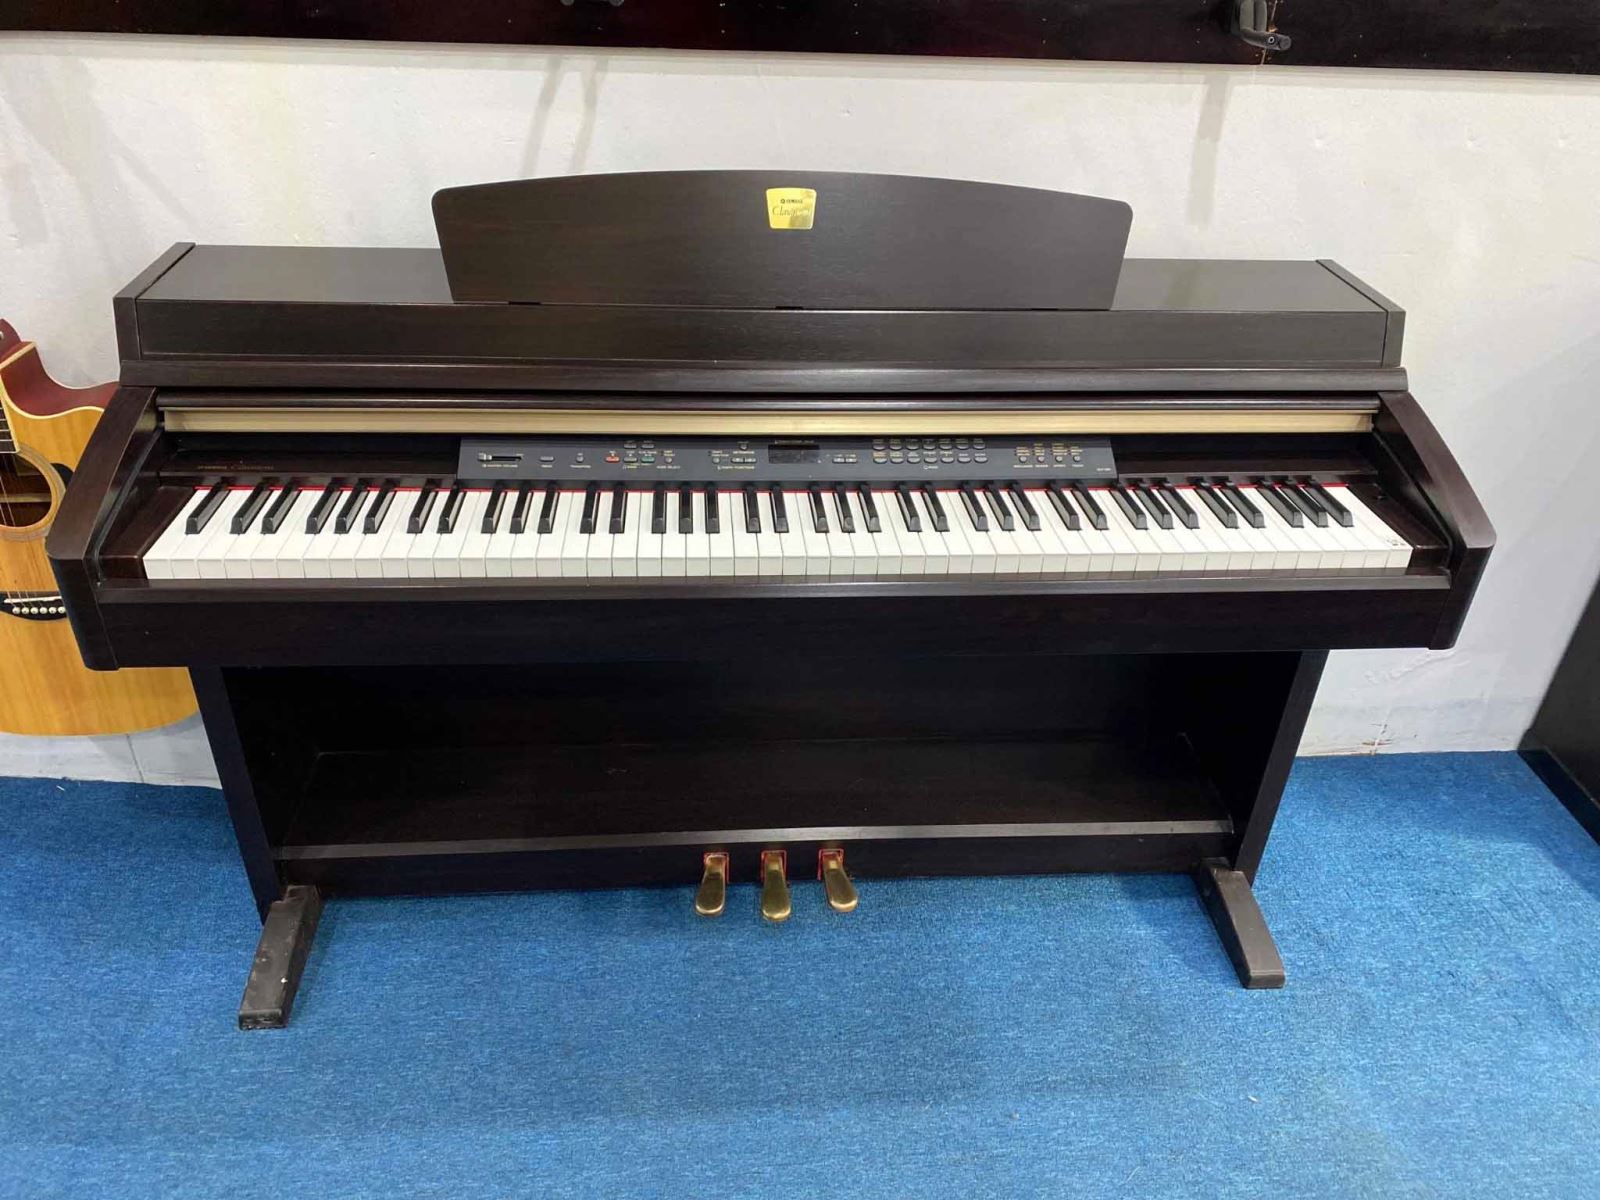 đàn piano điện yamaha clp230 giá rẻ